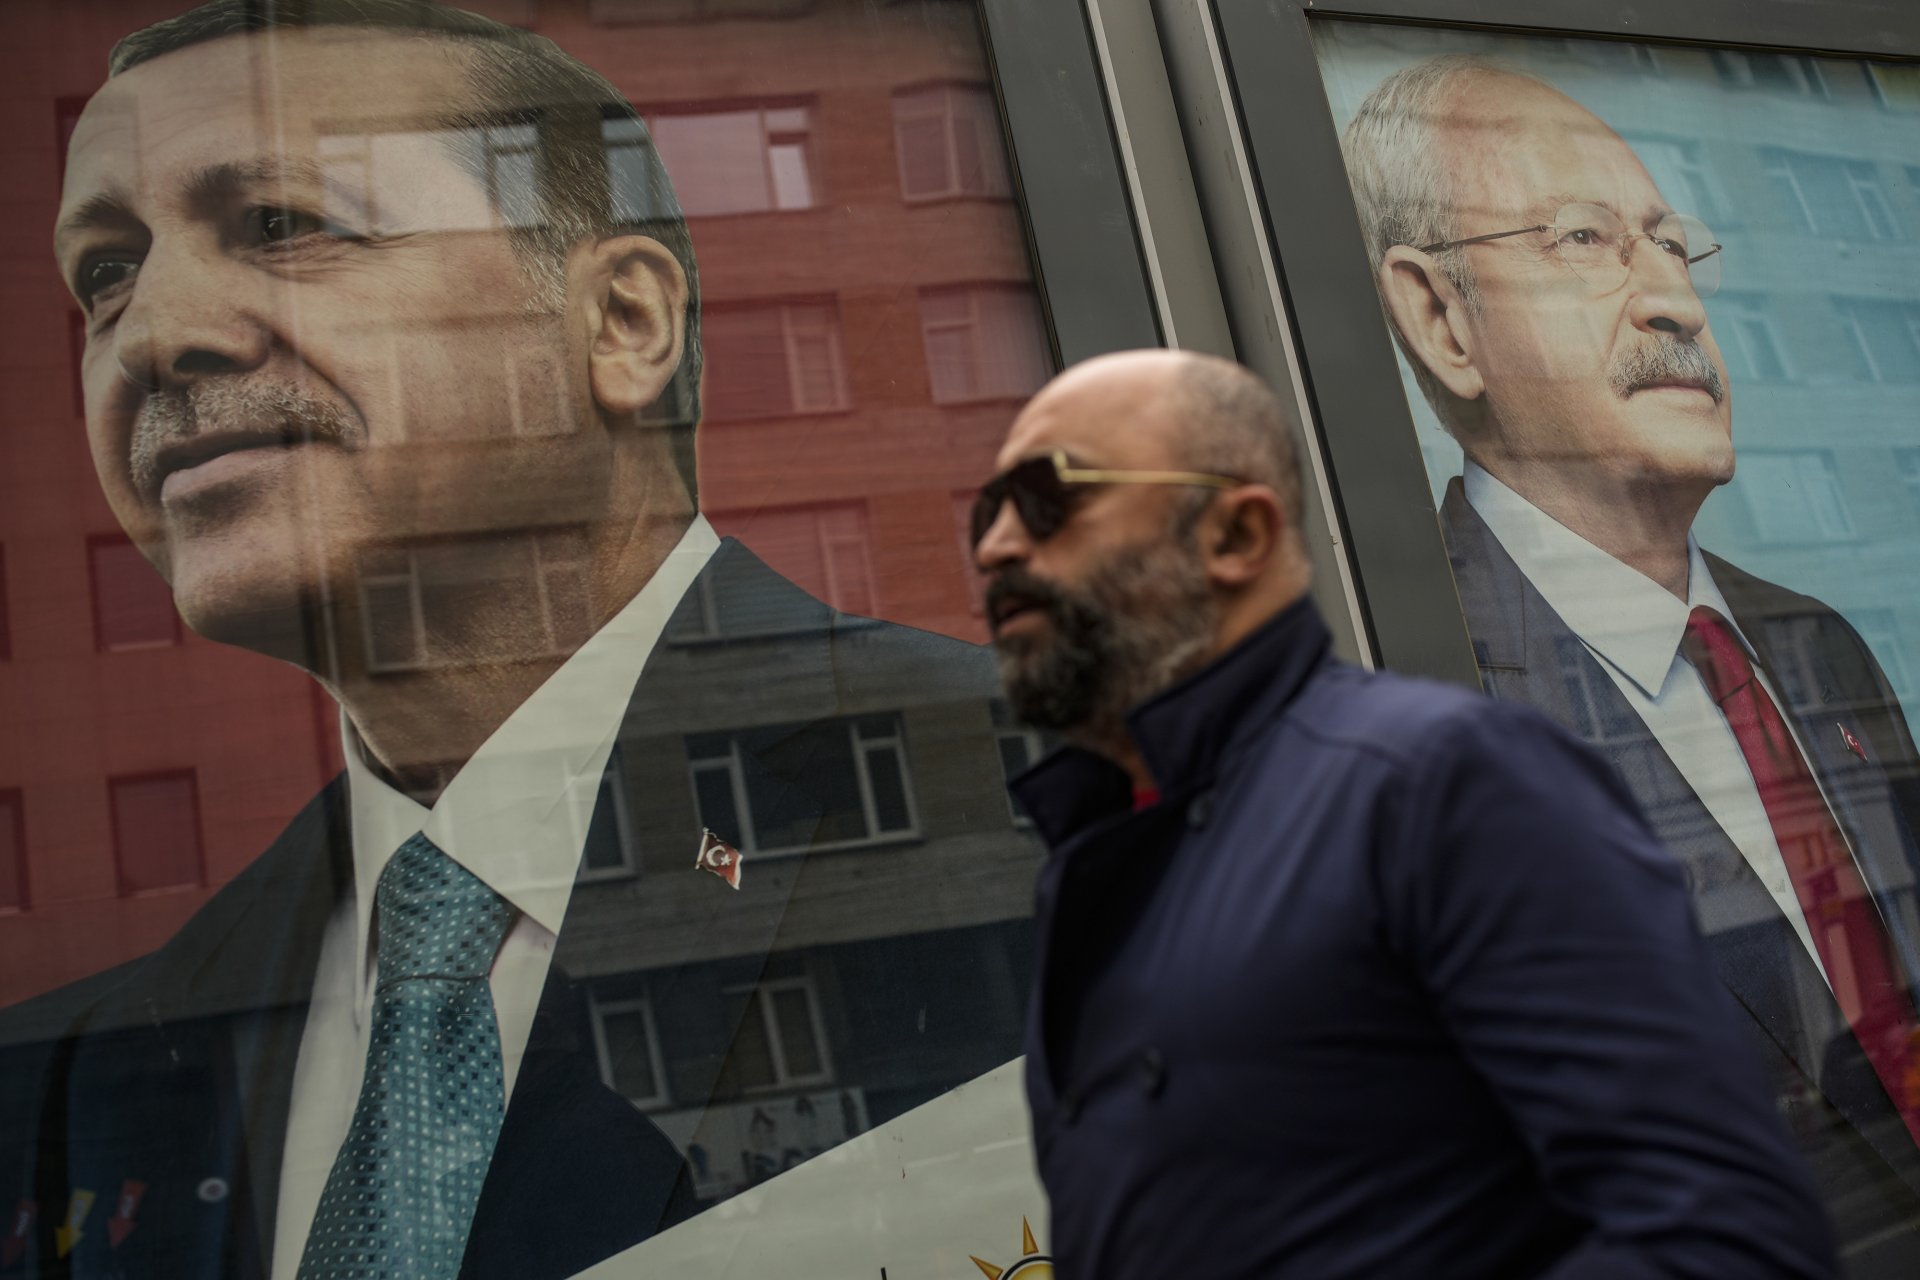 Предизборни плакати в Истанбул с лицата на главните претенденти за президентския пост - Реджеп Тайип Ердоган и Кемал Кълъчдароглу